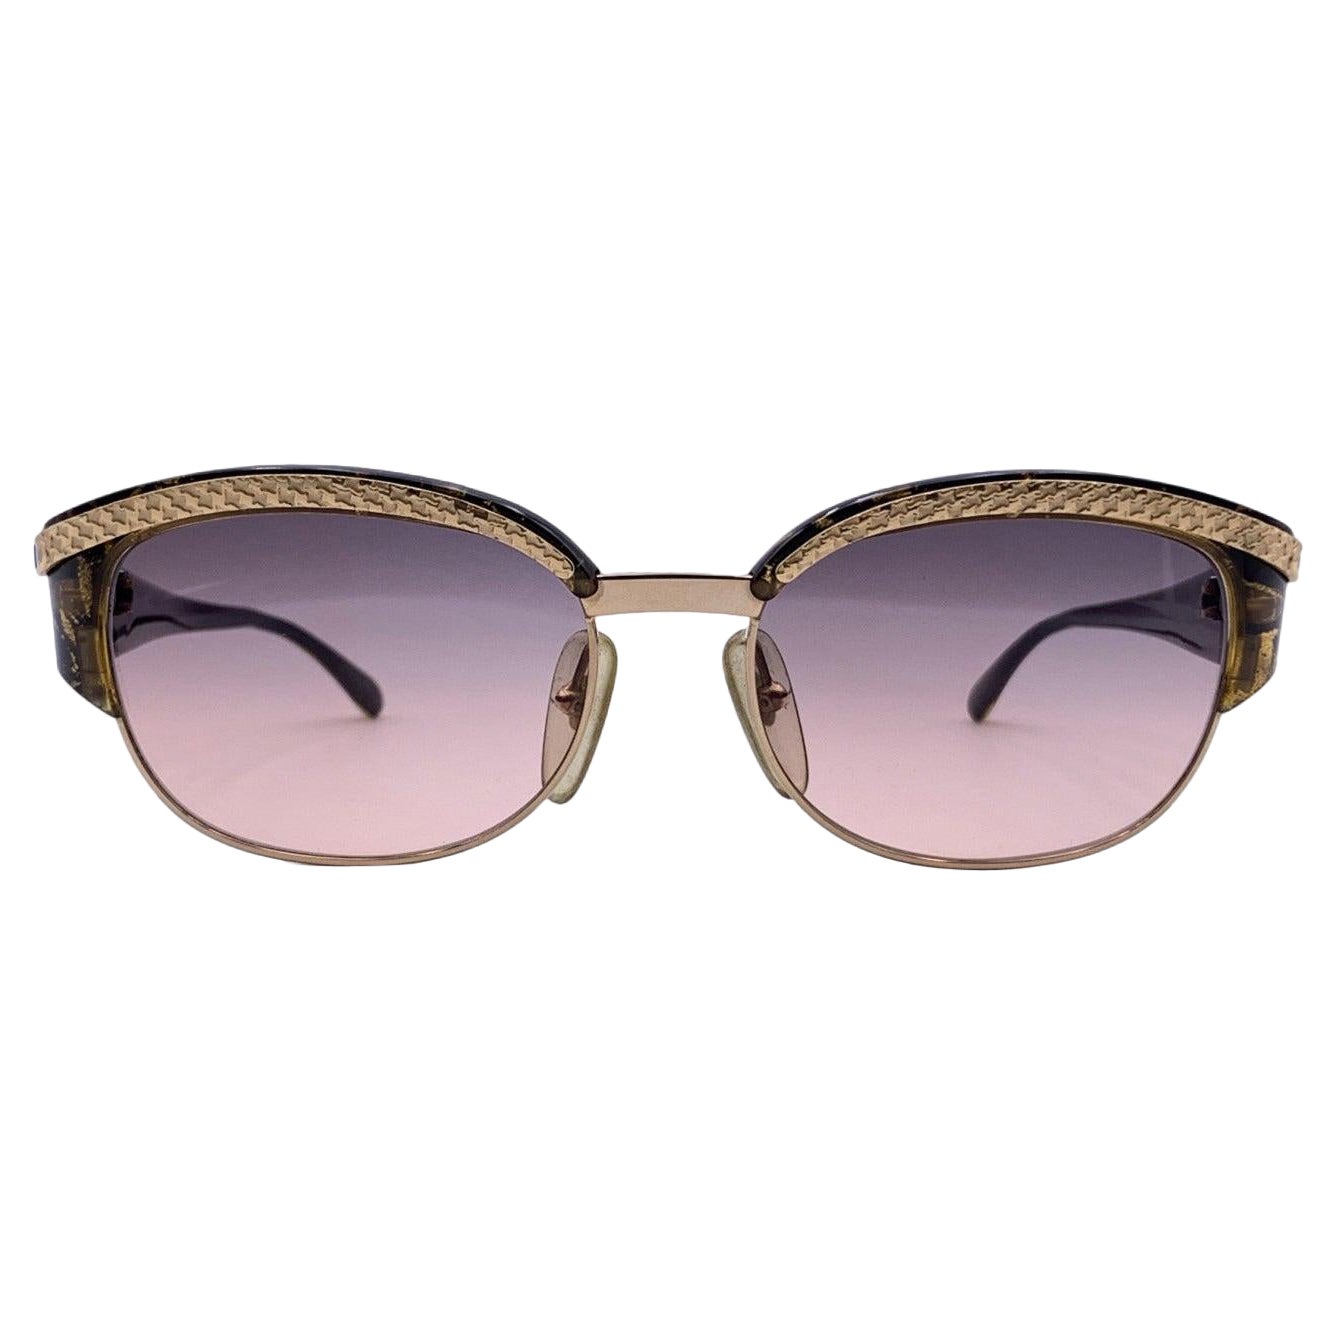 Christian Dior Vintage Sunglasses 2589 49 Marbled Bicolor Lenses 135mm For Sale